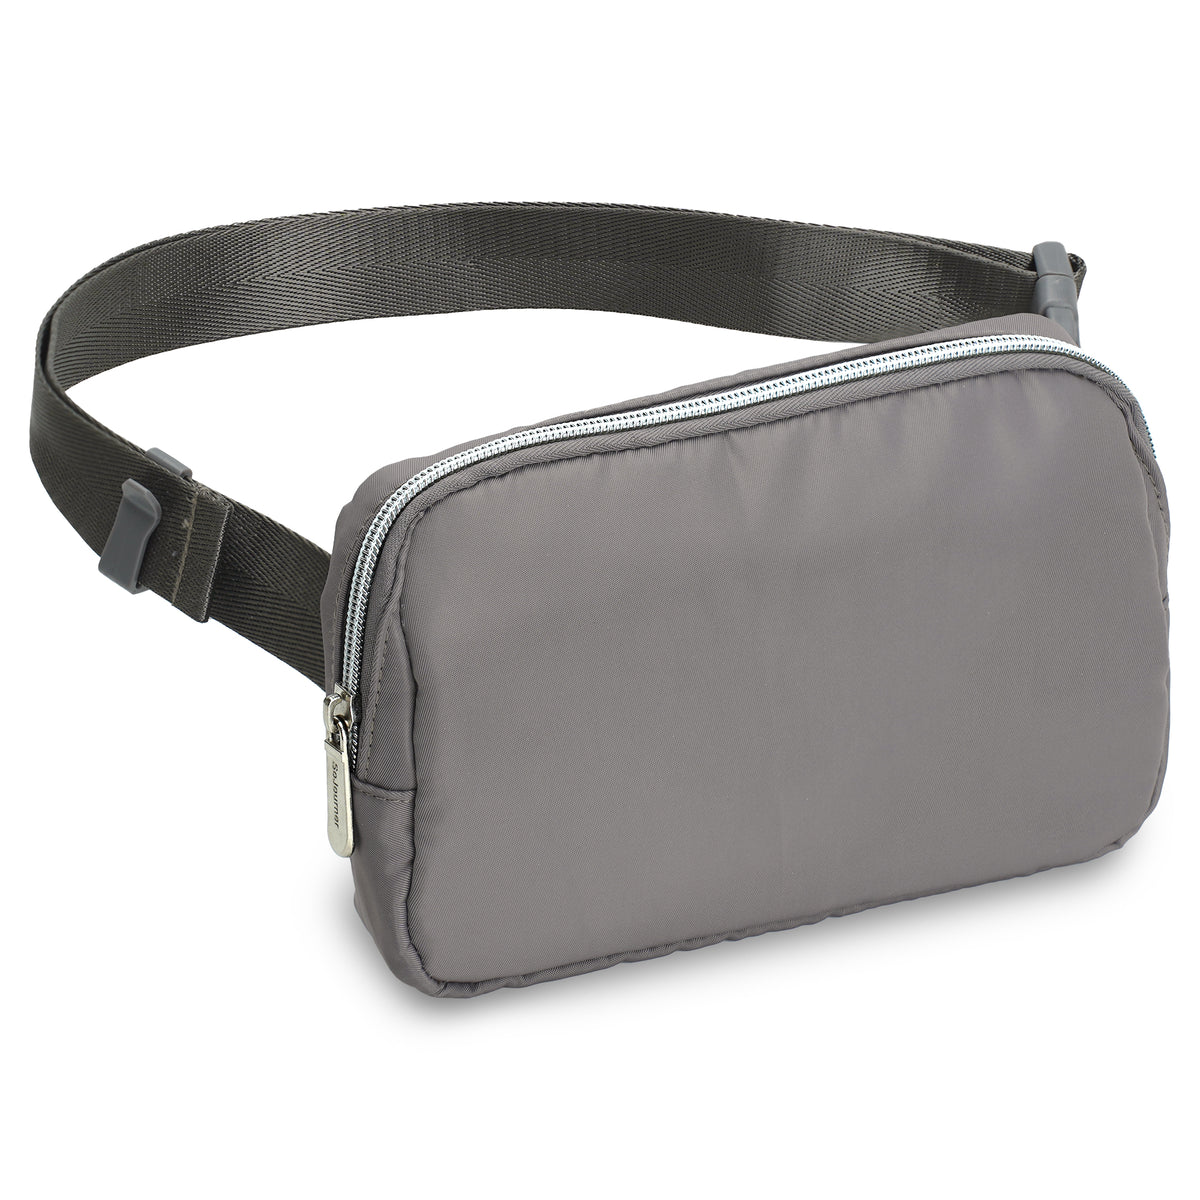 Gray Fanny Pack Belt Bag for Women I Cross Body Fanny Packs for Women - Crossbody Bags small Waist Bag Men